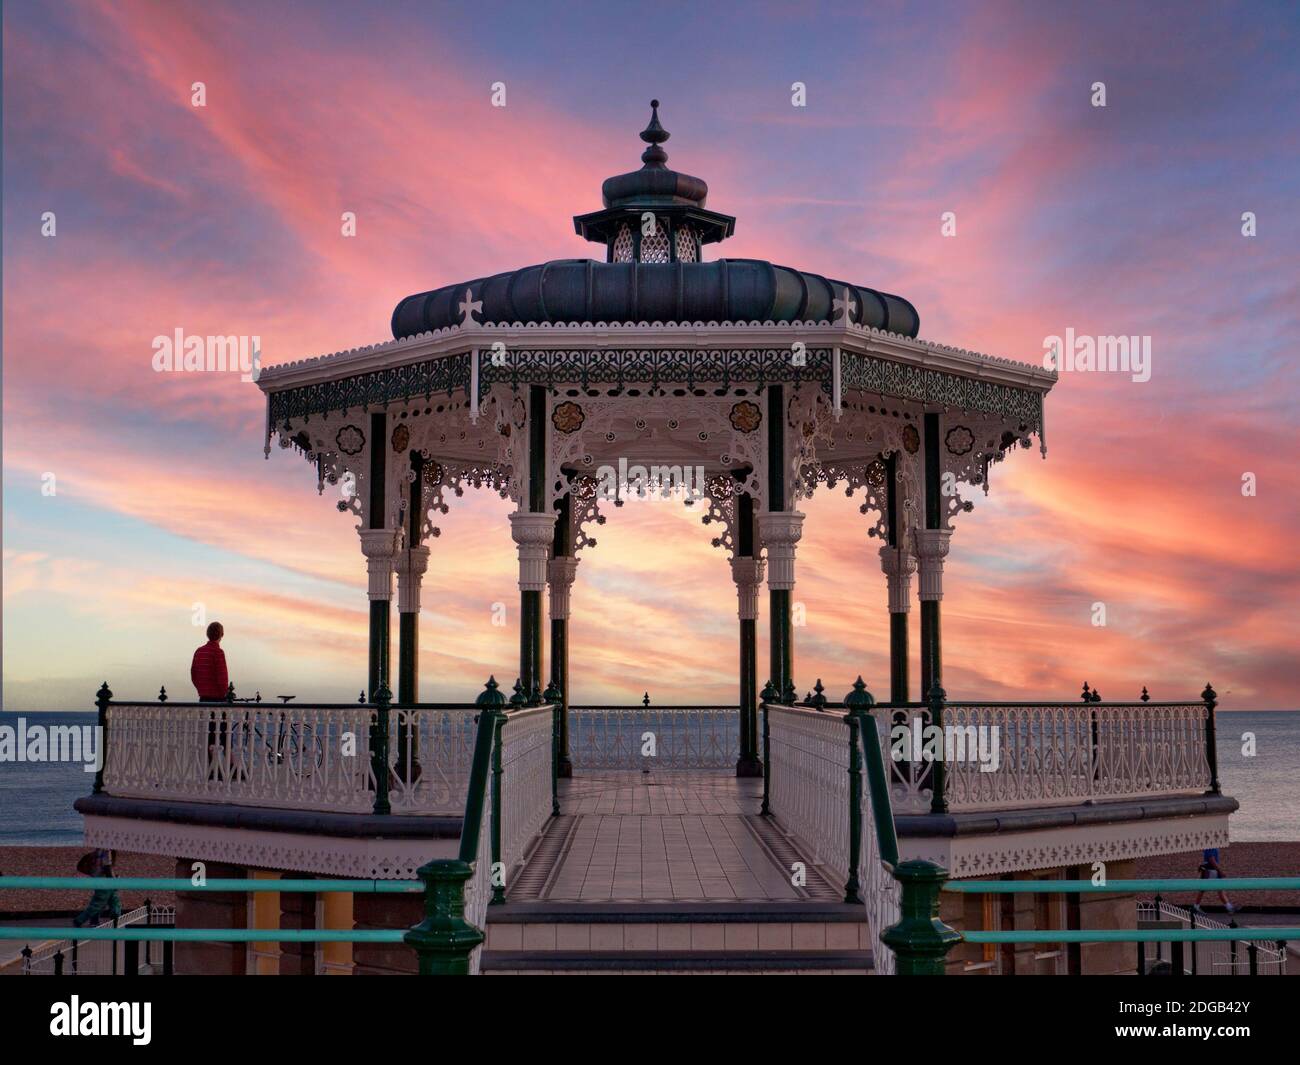 BRIGHTON Victorian Bandstand en el paseo marítimo a una puesta de sol roja Con una figura solitaria disfrutando de la vista panorámica del paisaje marino Brighton Sussex Reino Unido Foto de stock